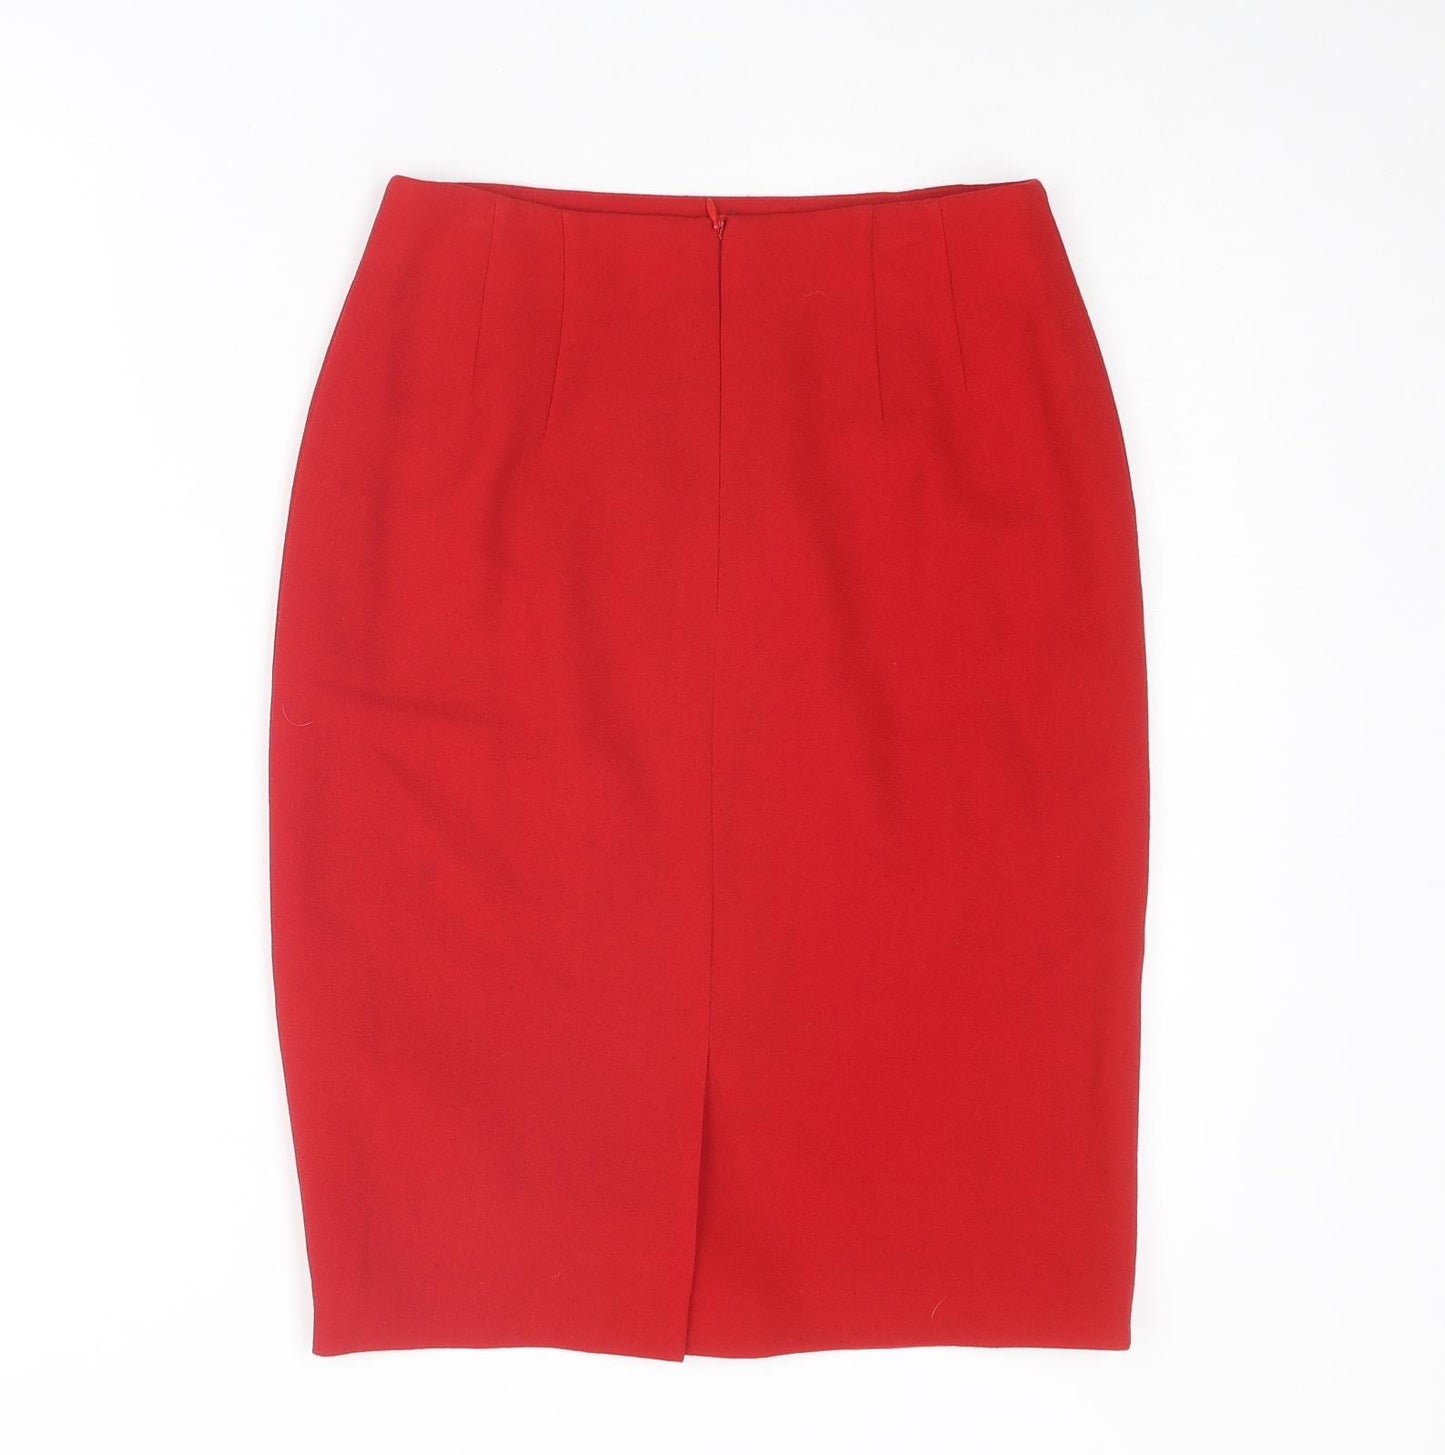 ESCADA Womens Red Wool A-Line Skirt Size 6 Zip